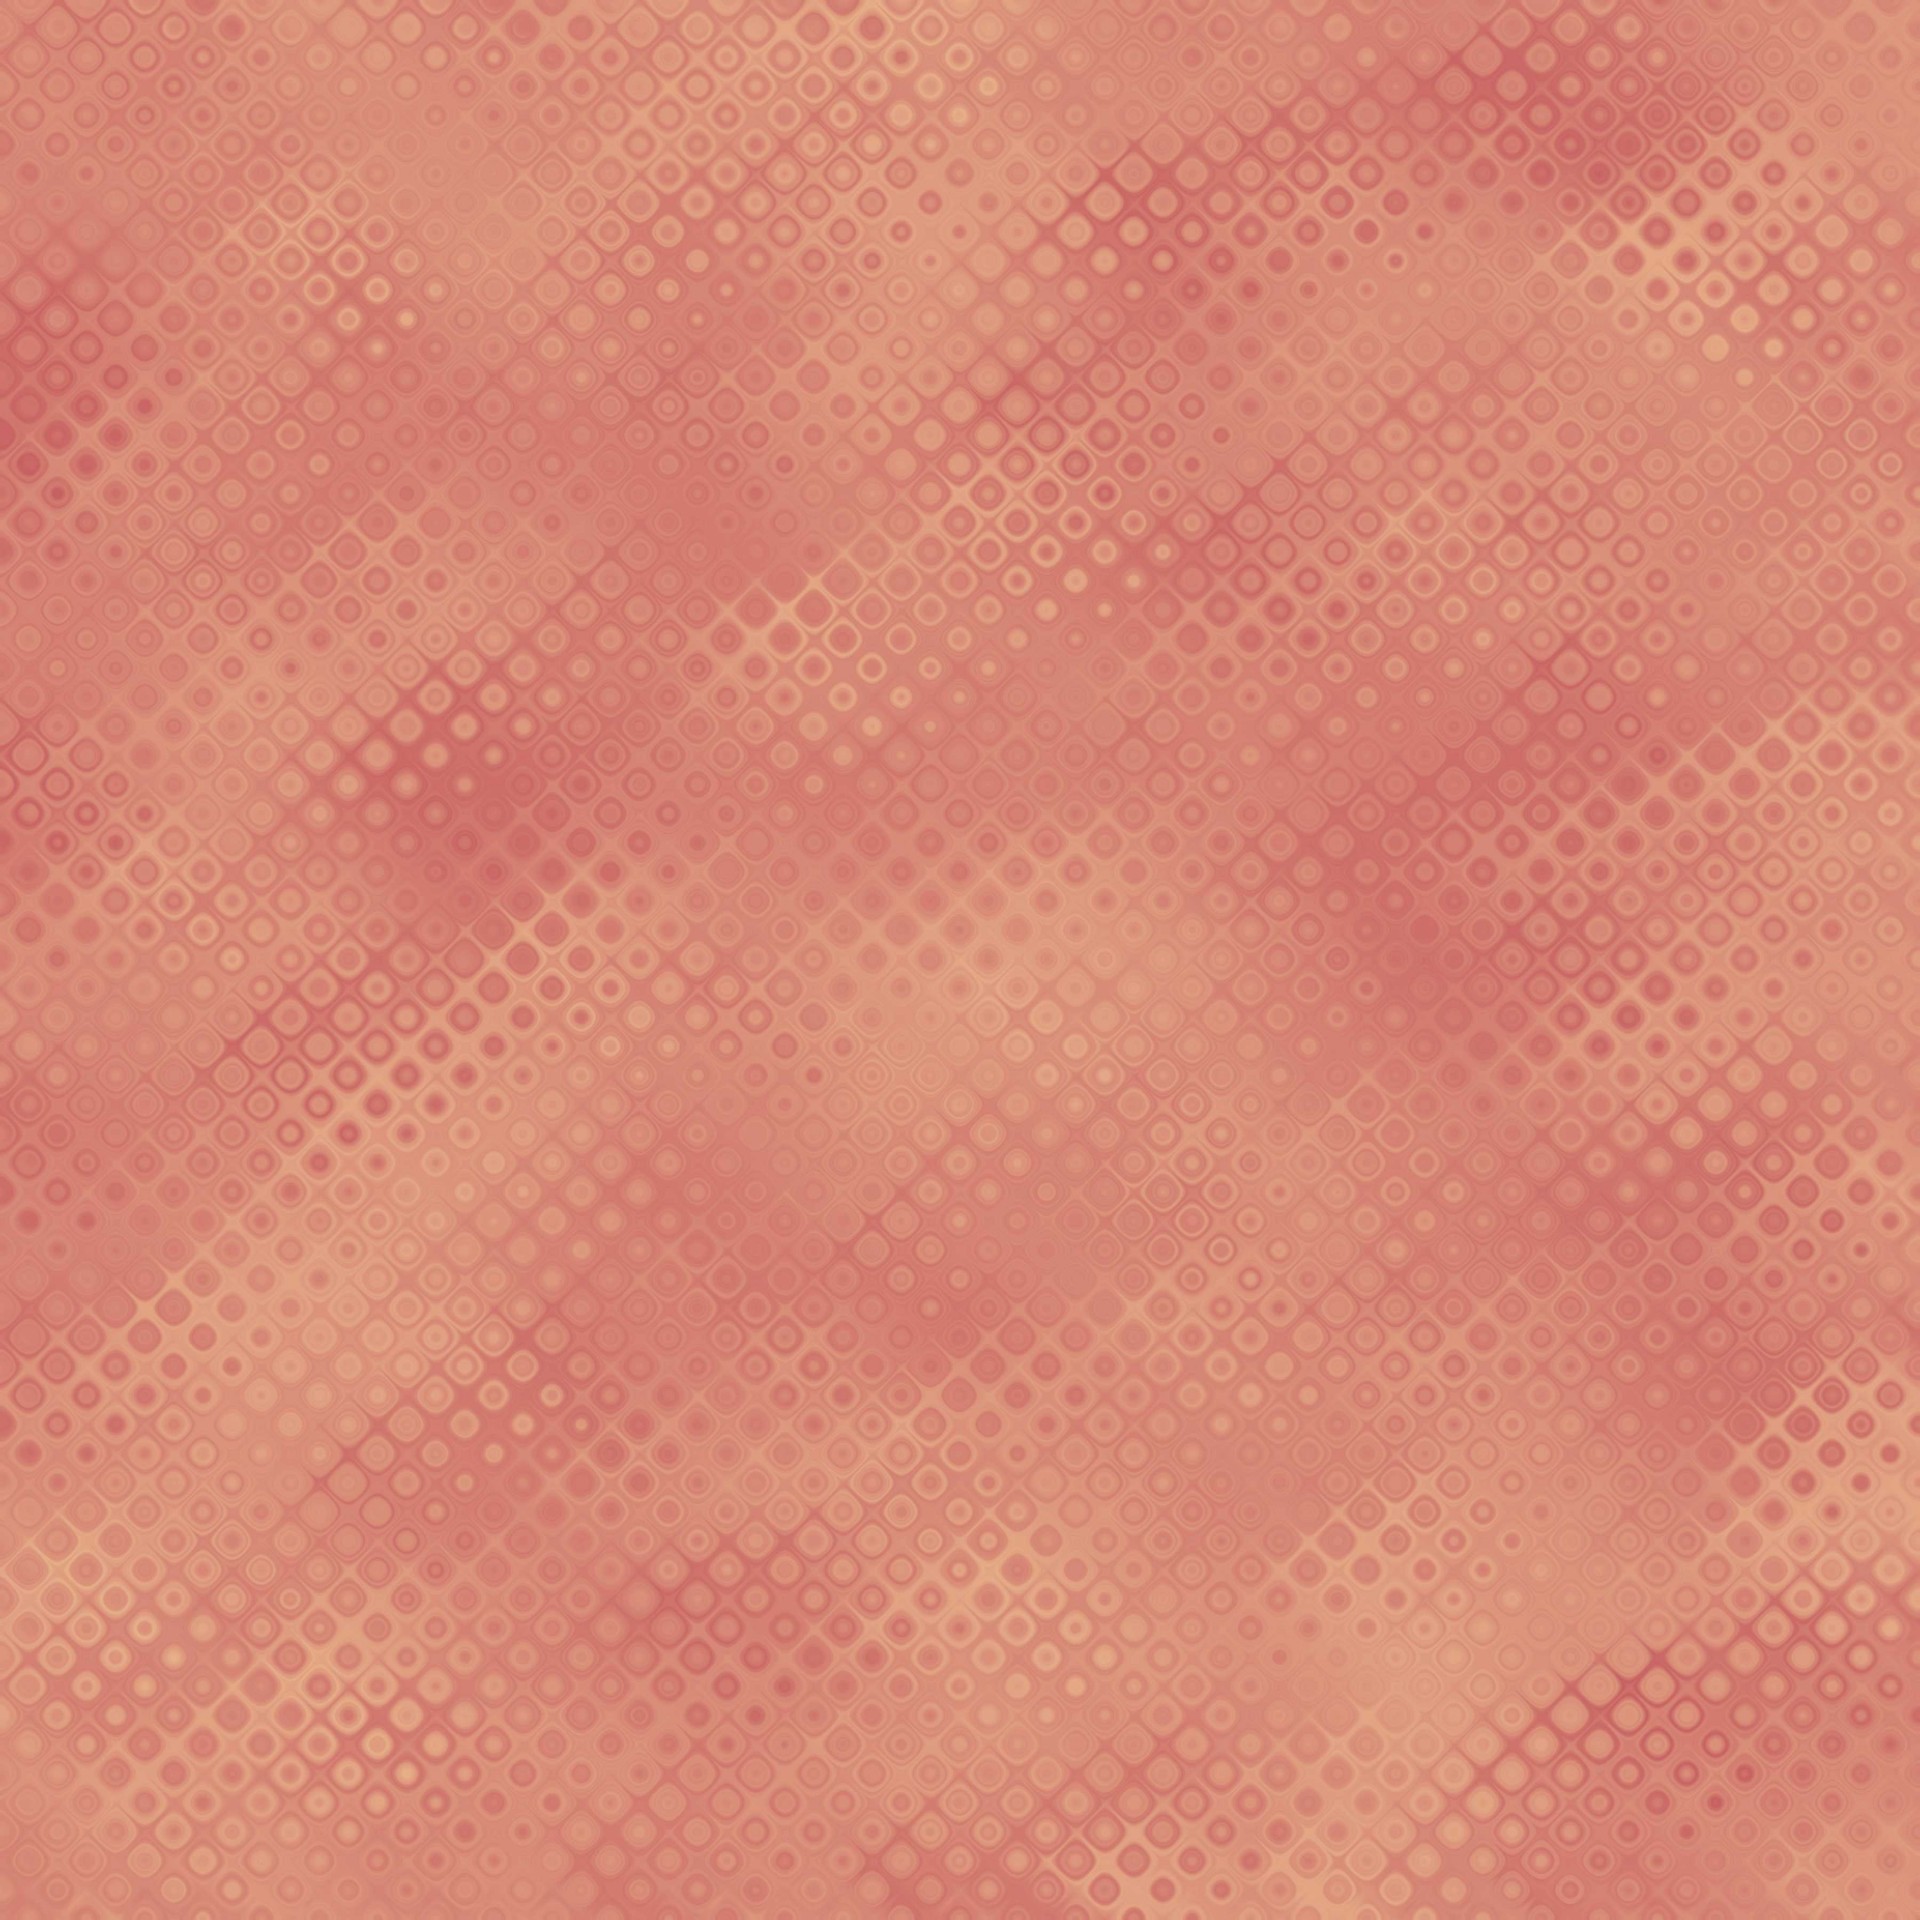 paper patterns orange free photo